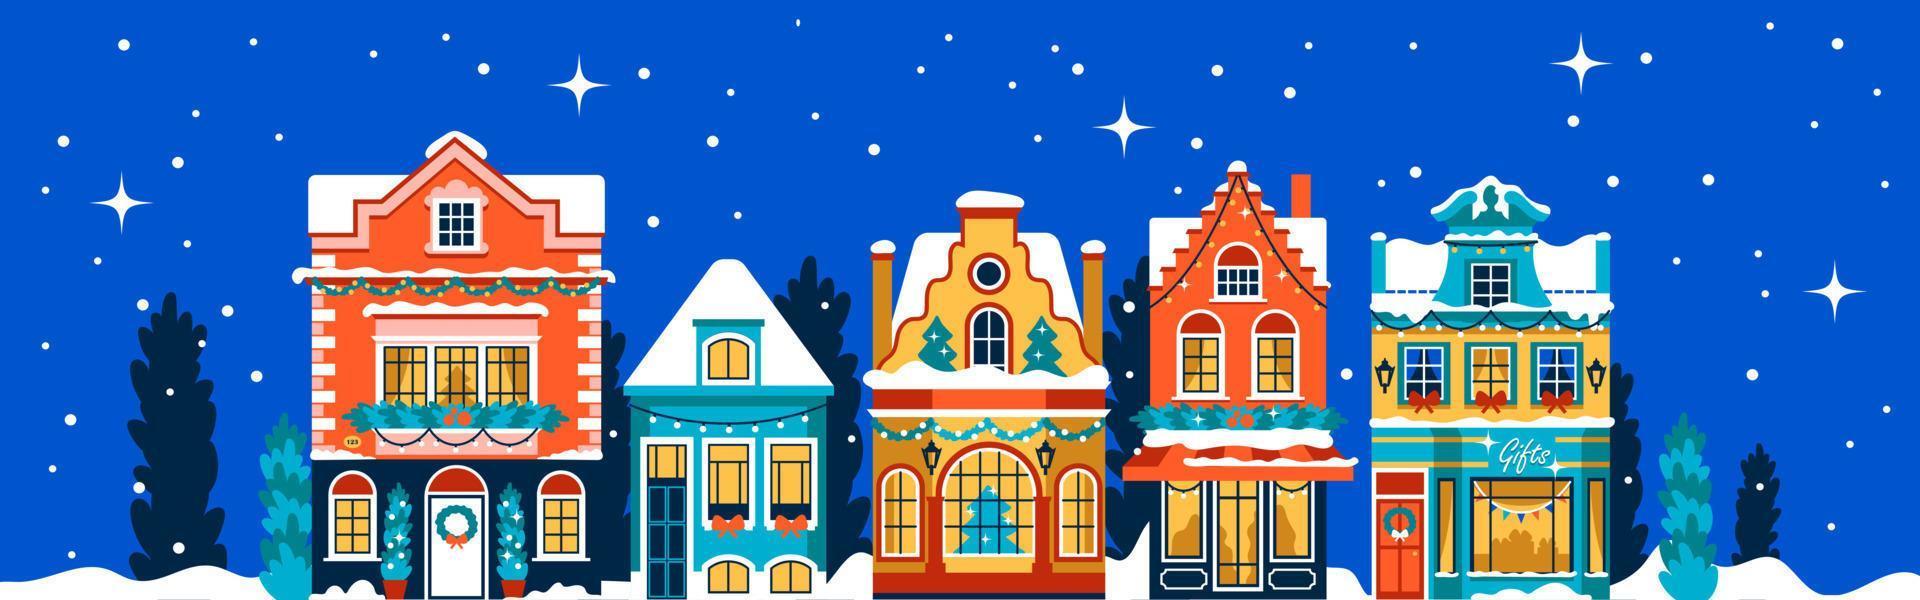 jul baner med ljust dekorerad hus med girlanger. platt fasader med jul träd och snö vektor